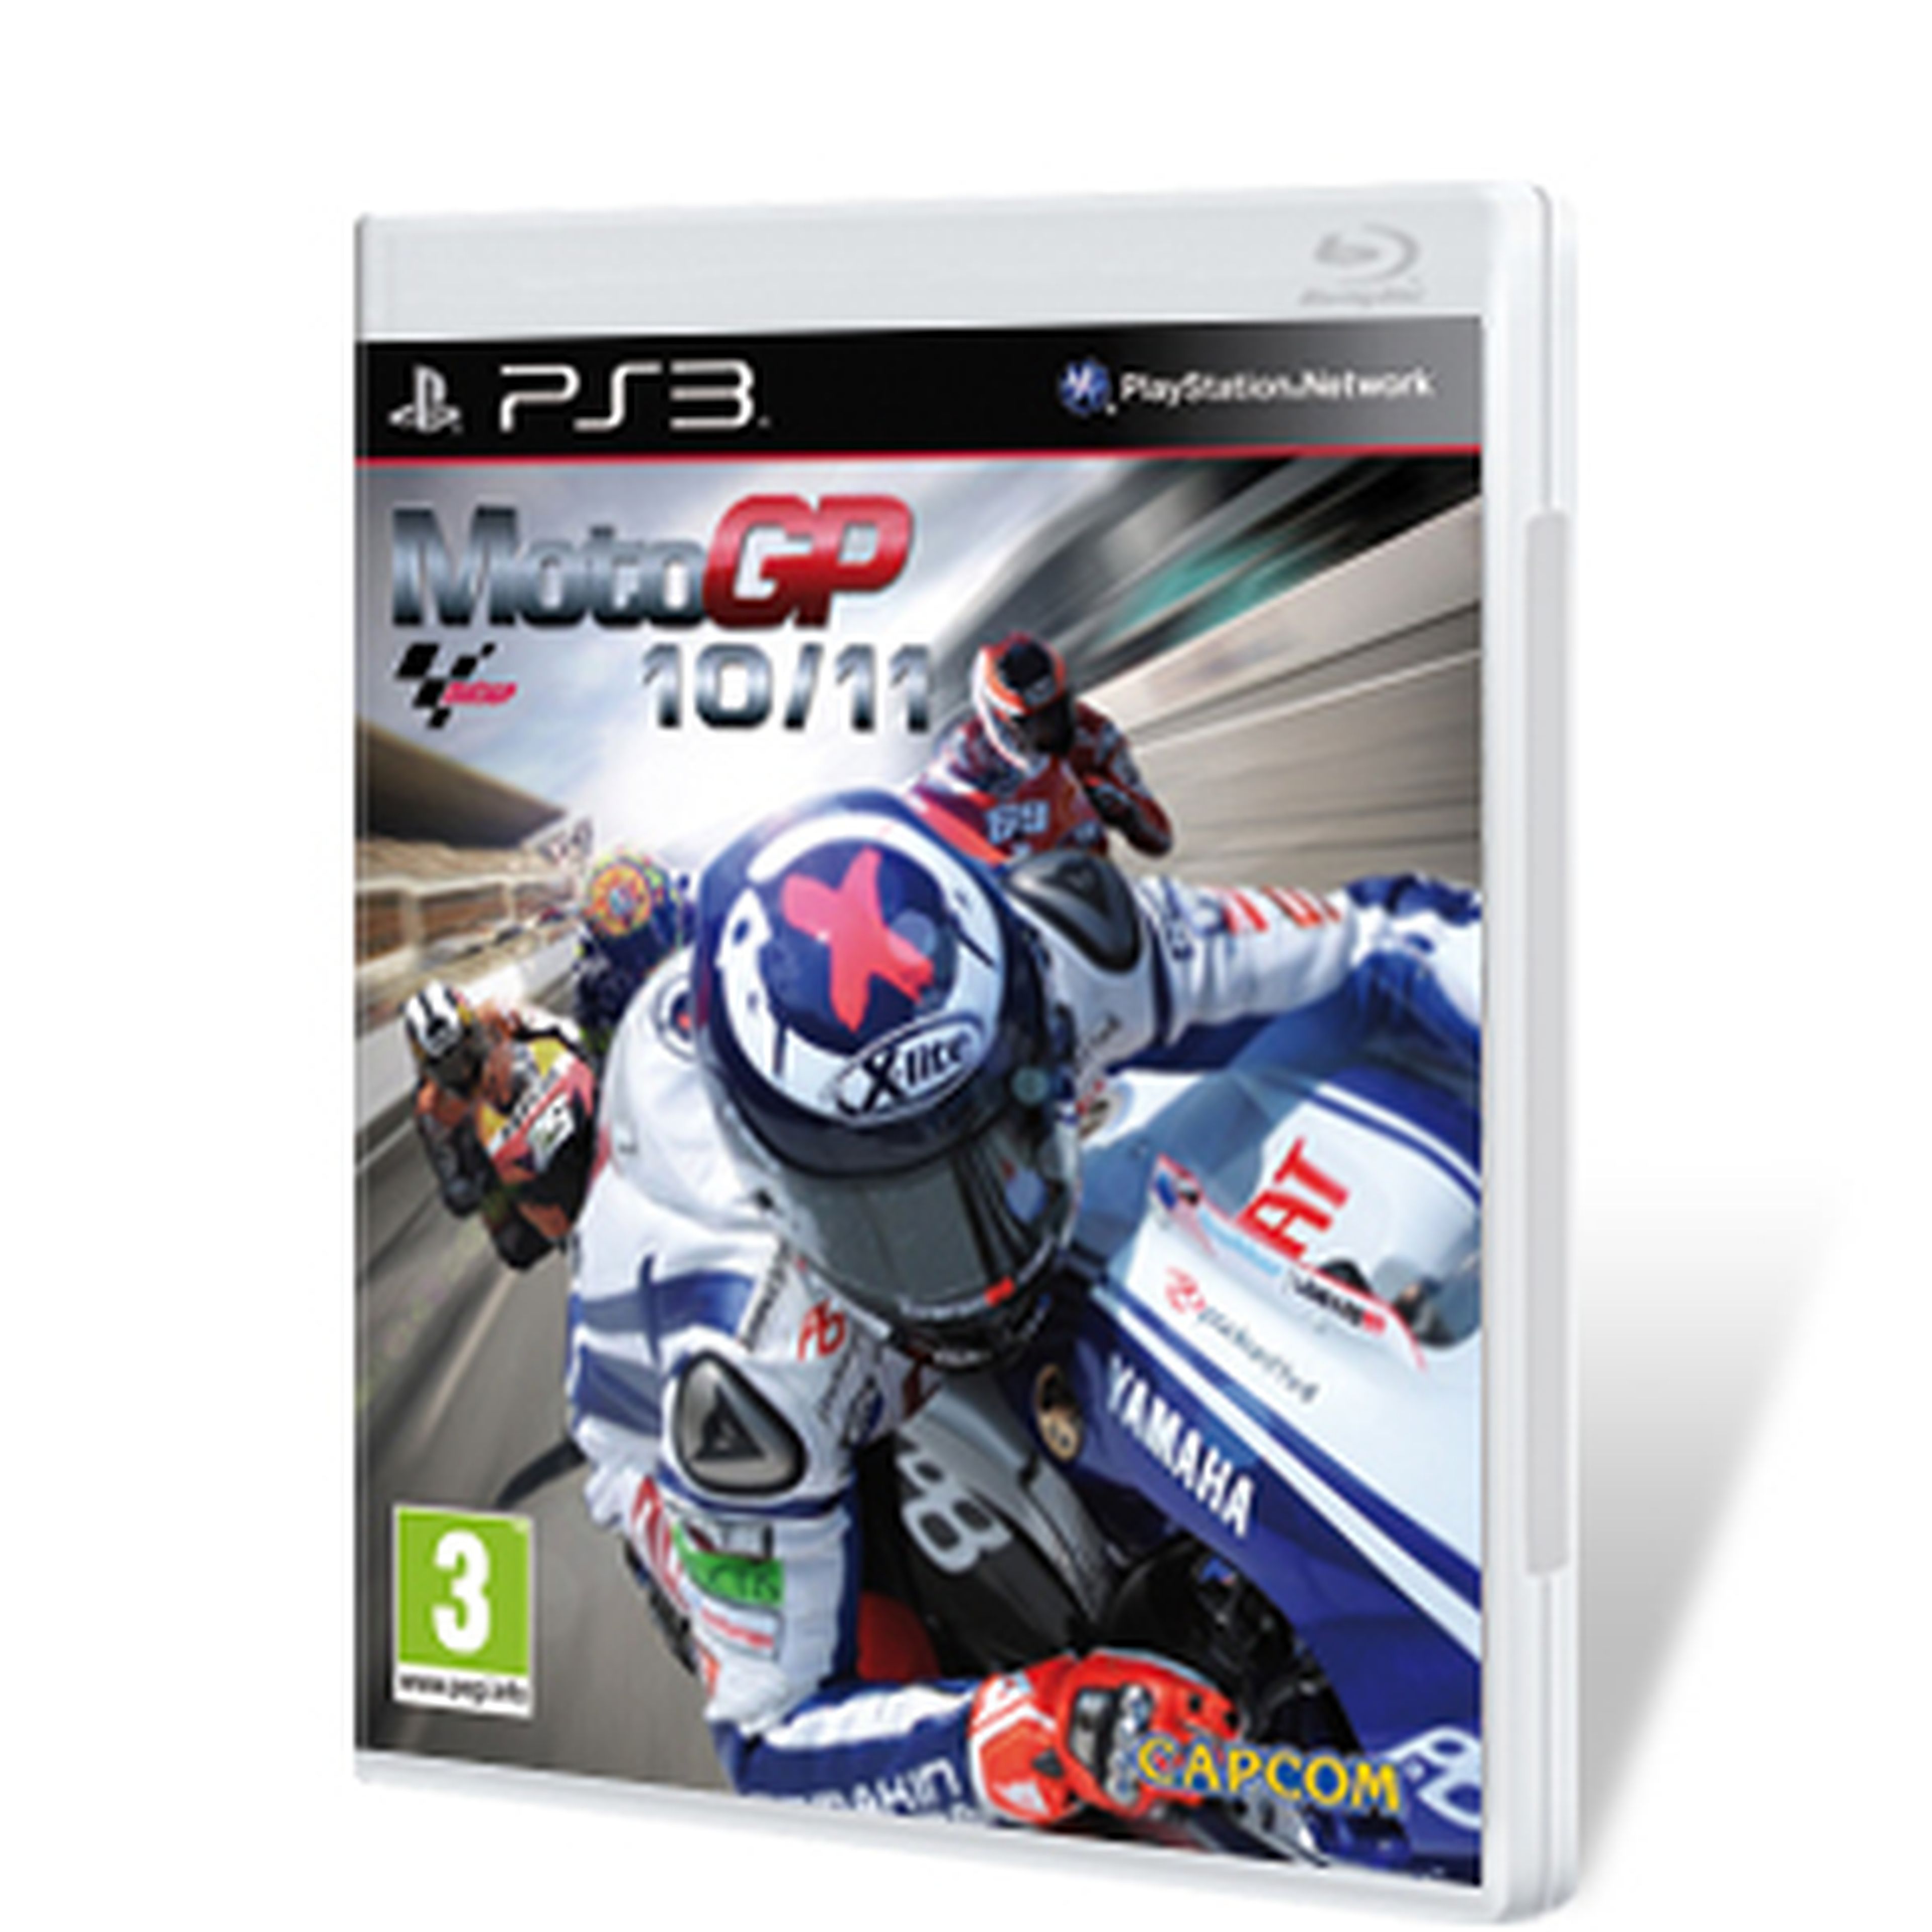 MotoGP 10/11 para PS3